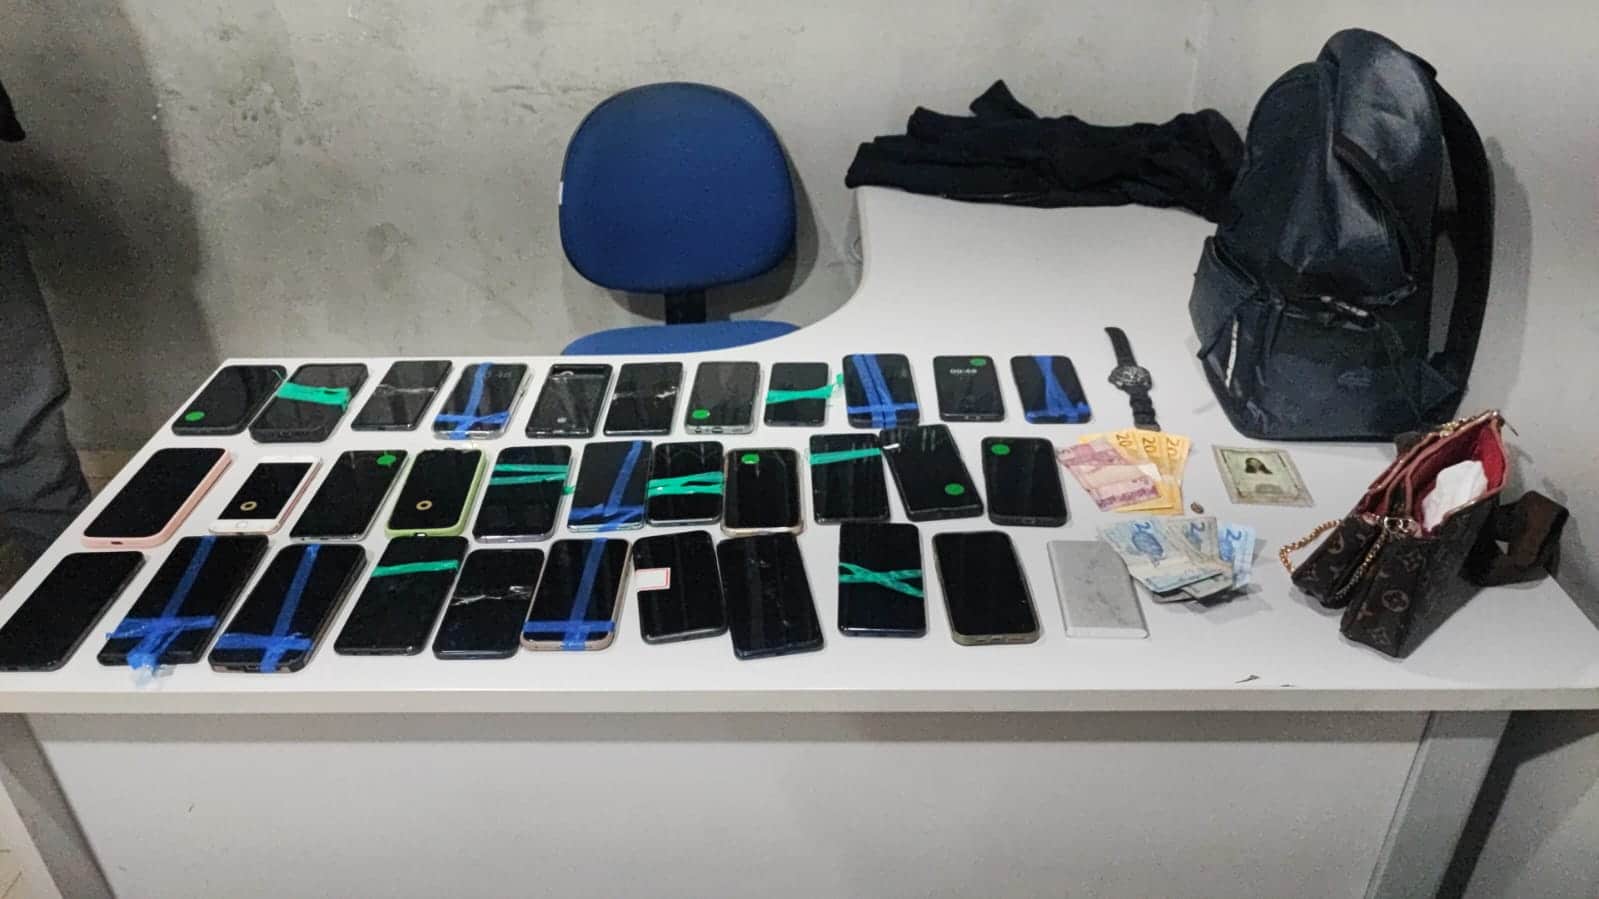 Lollapalooza: Trio preso com 30 celulares furtados